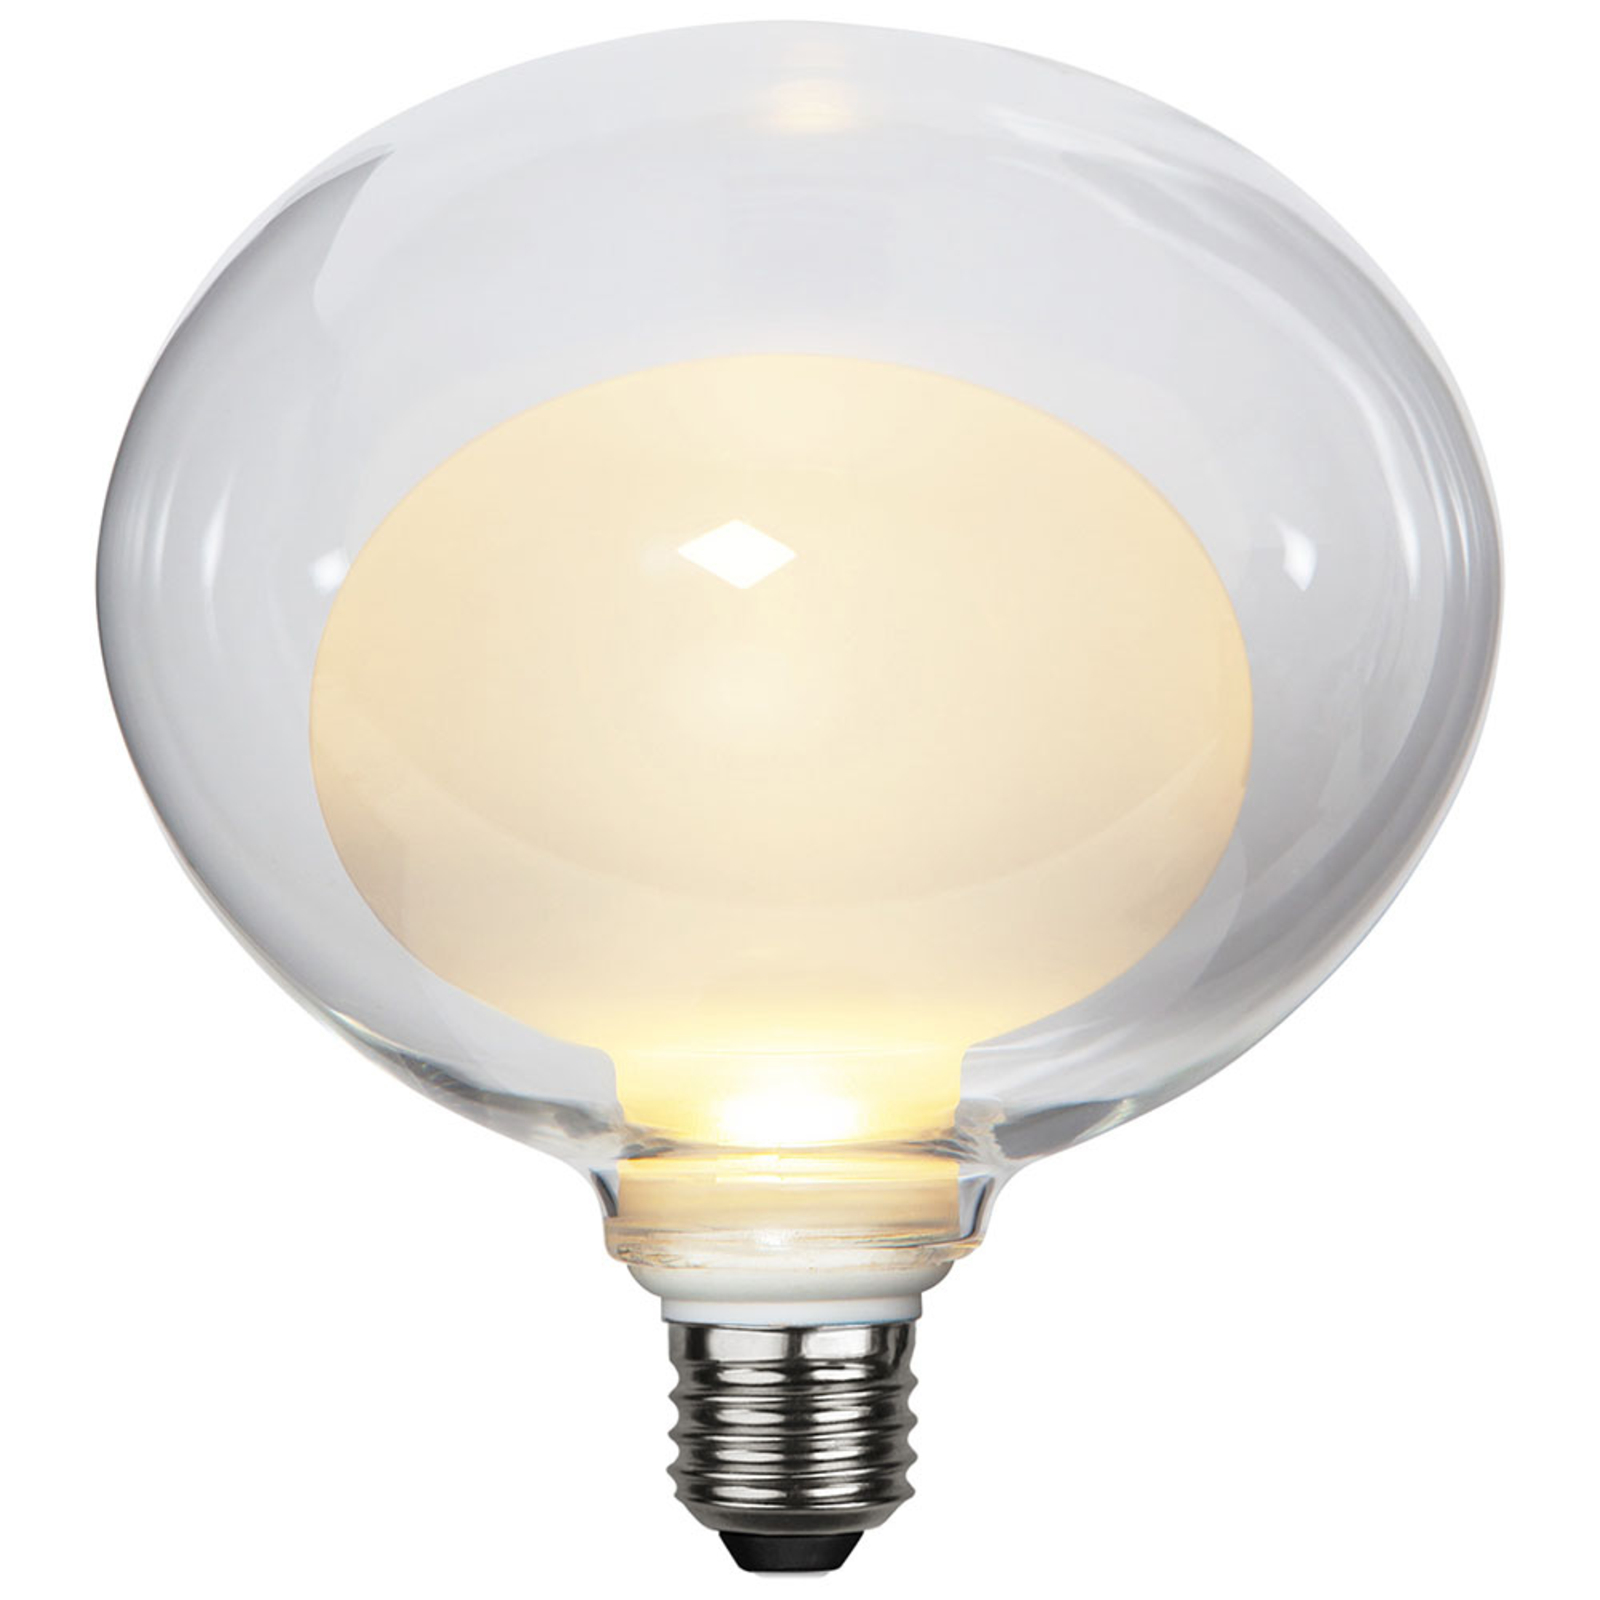 LED lamp Space E27 3,5W G150, opaal, 3-step dim